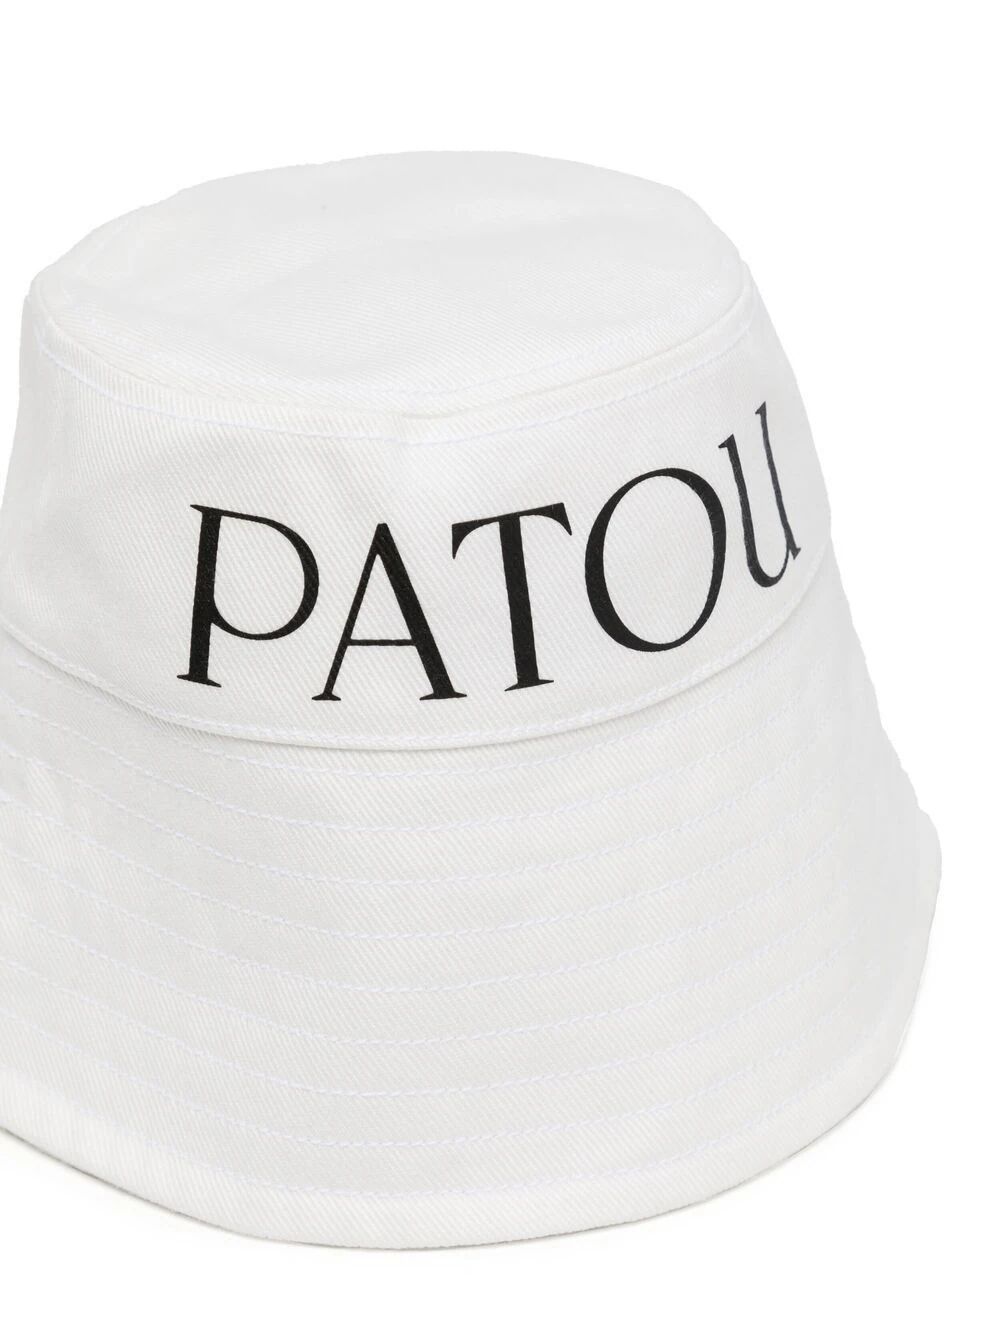 Patou Bucket Hat